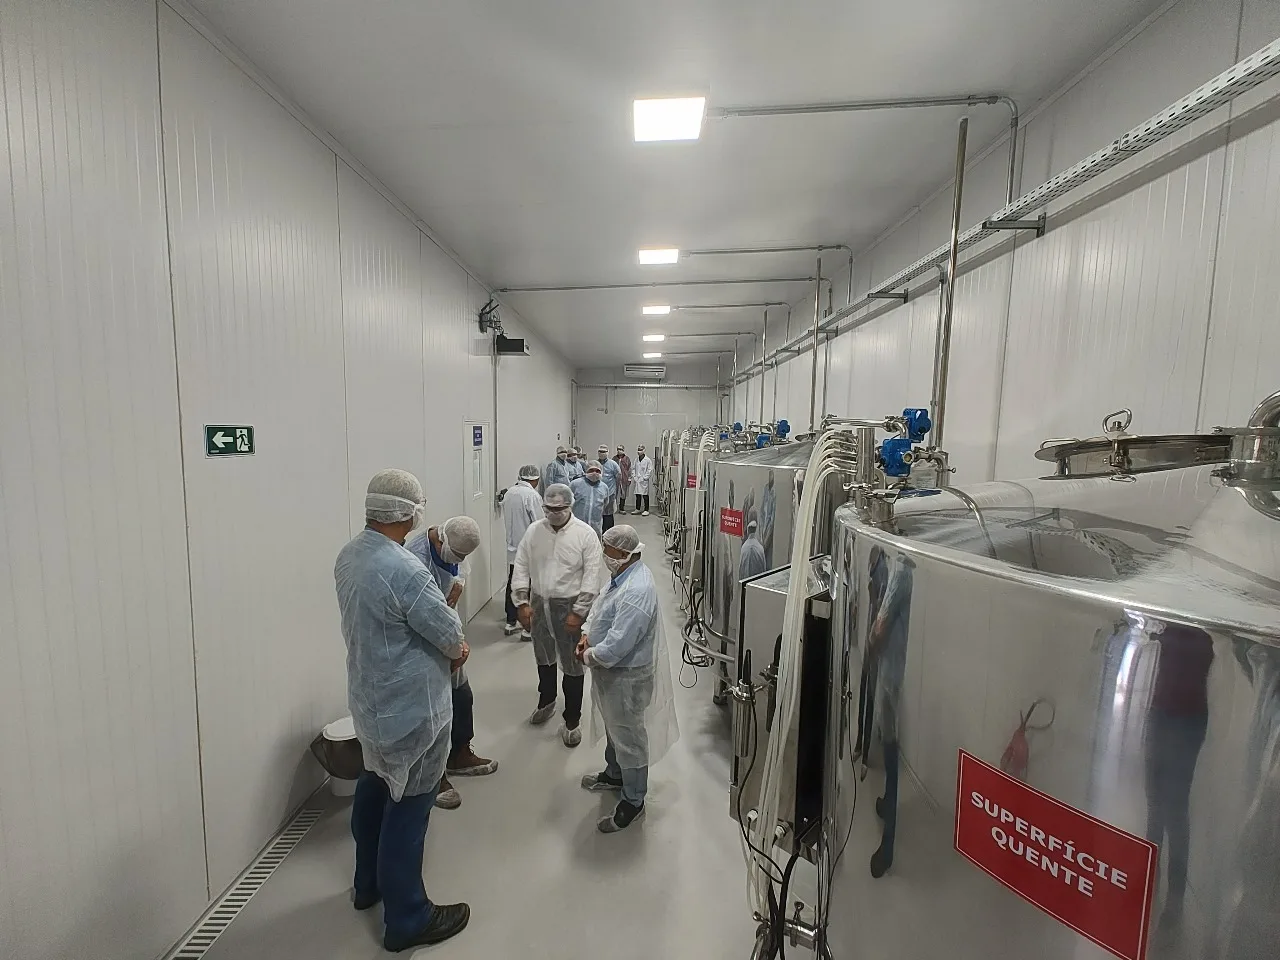 Agricultura regenerativa: Usina Caeté inaugura Fábrica de Biológicos